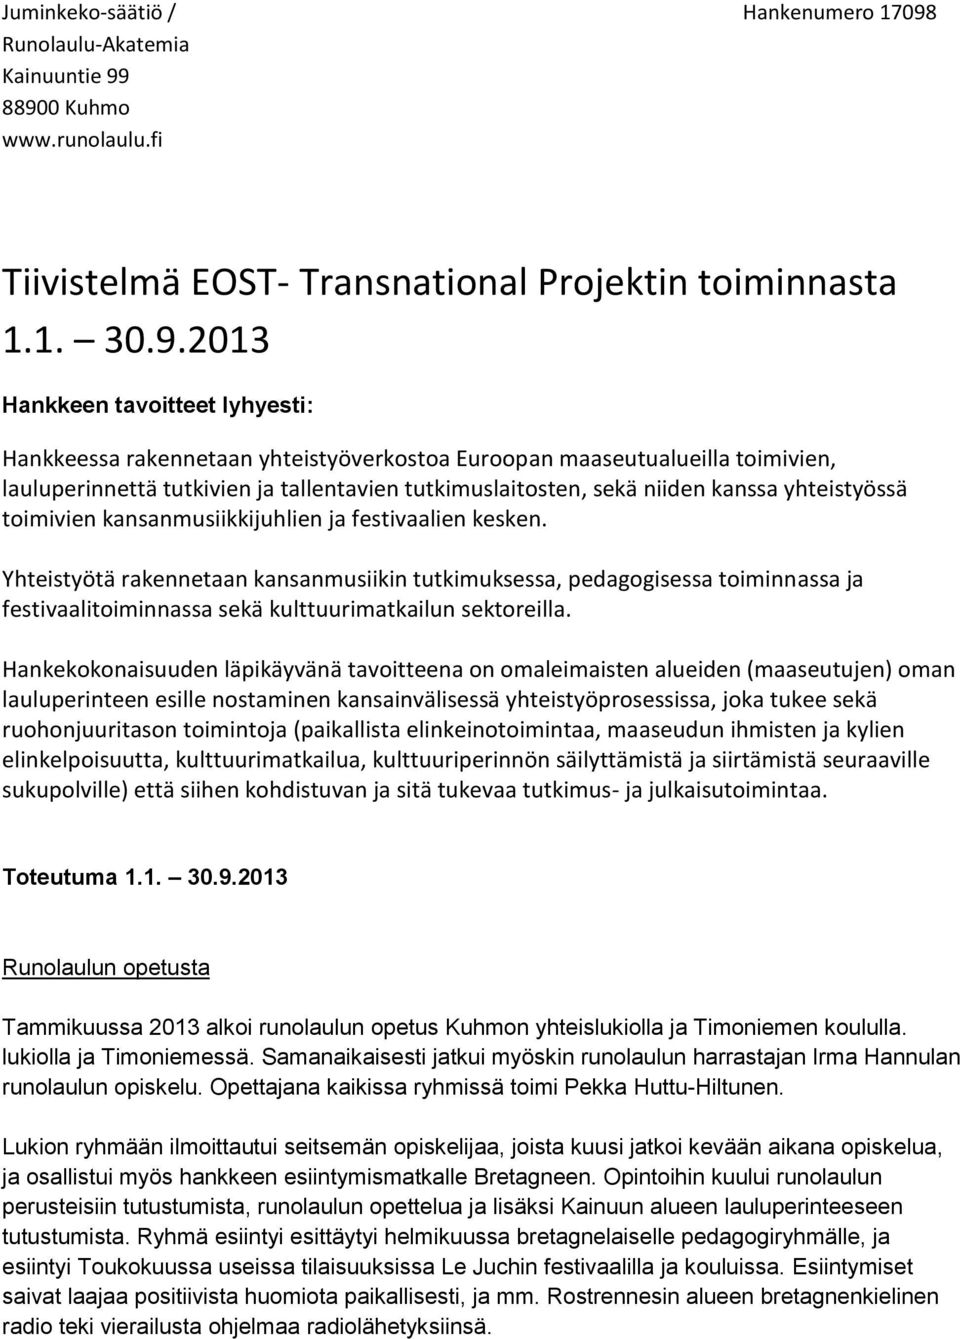 88900 Kuhmo www.runolaulu.fi Tiivistelmä EOST- Transnational Projektin toiminnasta 1.1. 30.9.2013 Hankkeen tavoitteet lyhyesti: Hankkeessa rakennetaan yhteistyöverkostoa Euroopan maaseutualueilla